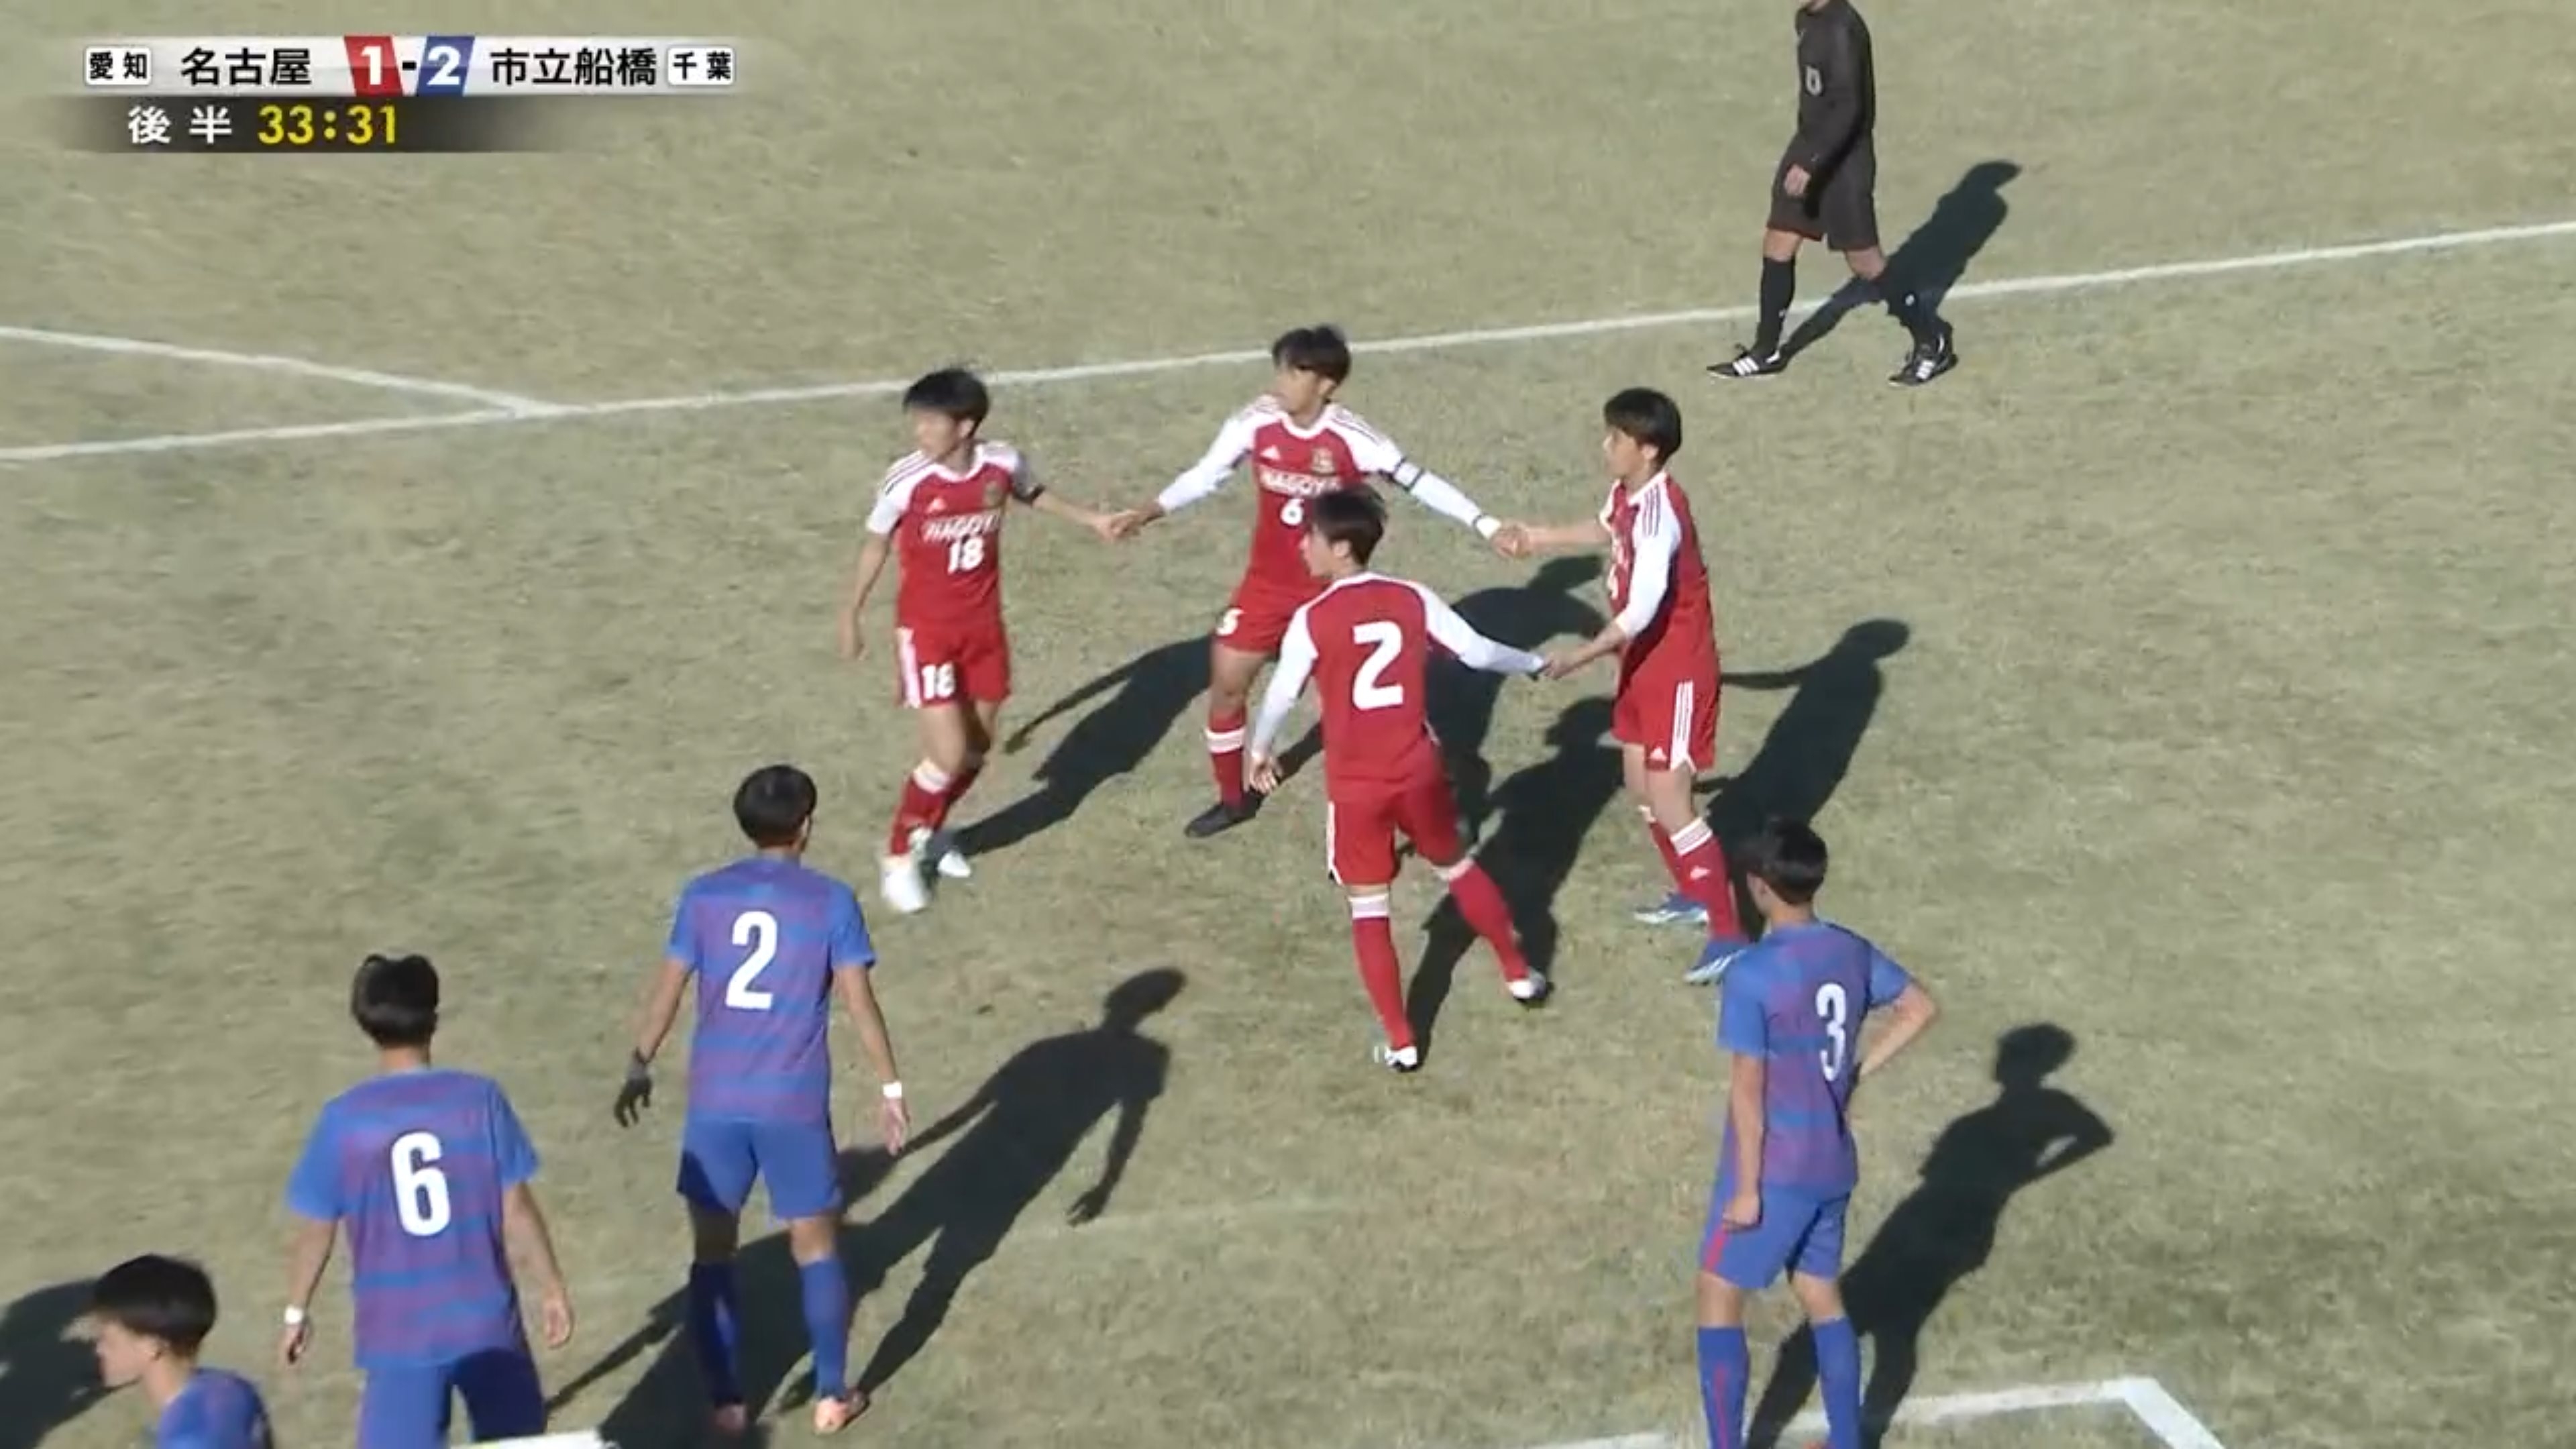 又见迷惑战术🤣第102届日本高中赛，球员手牵手转圈随后散开